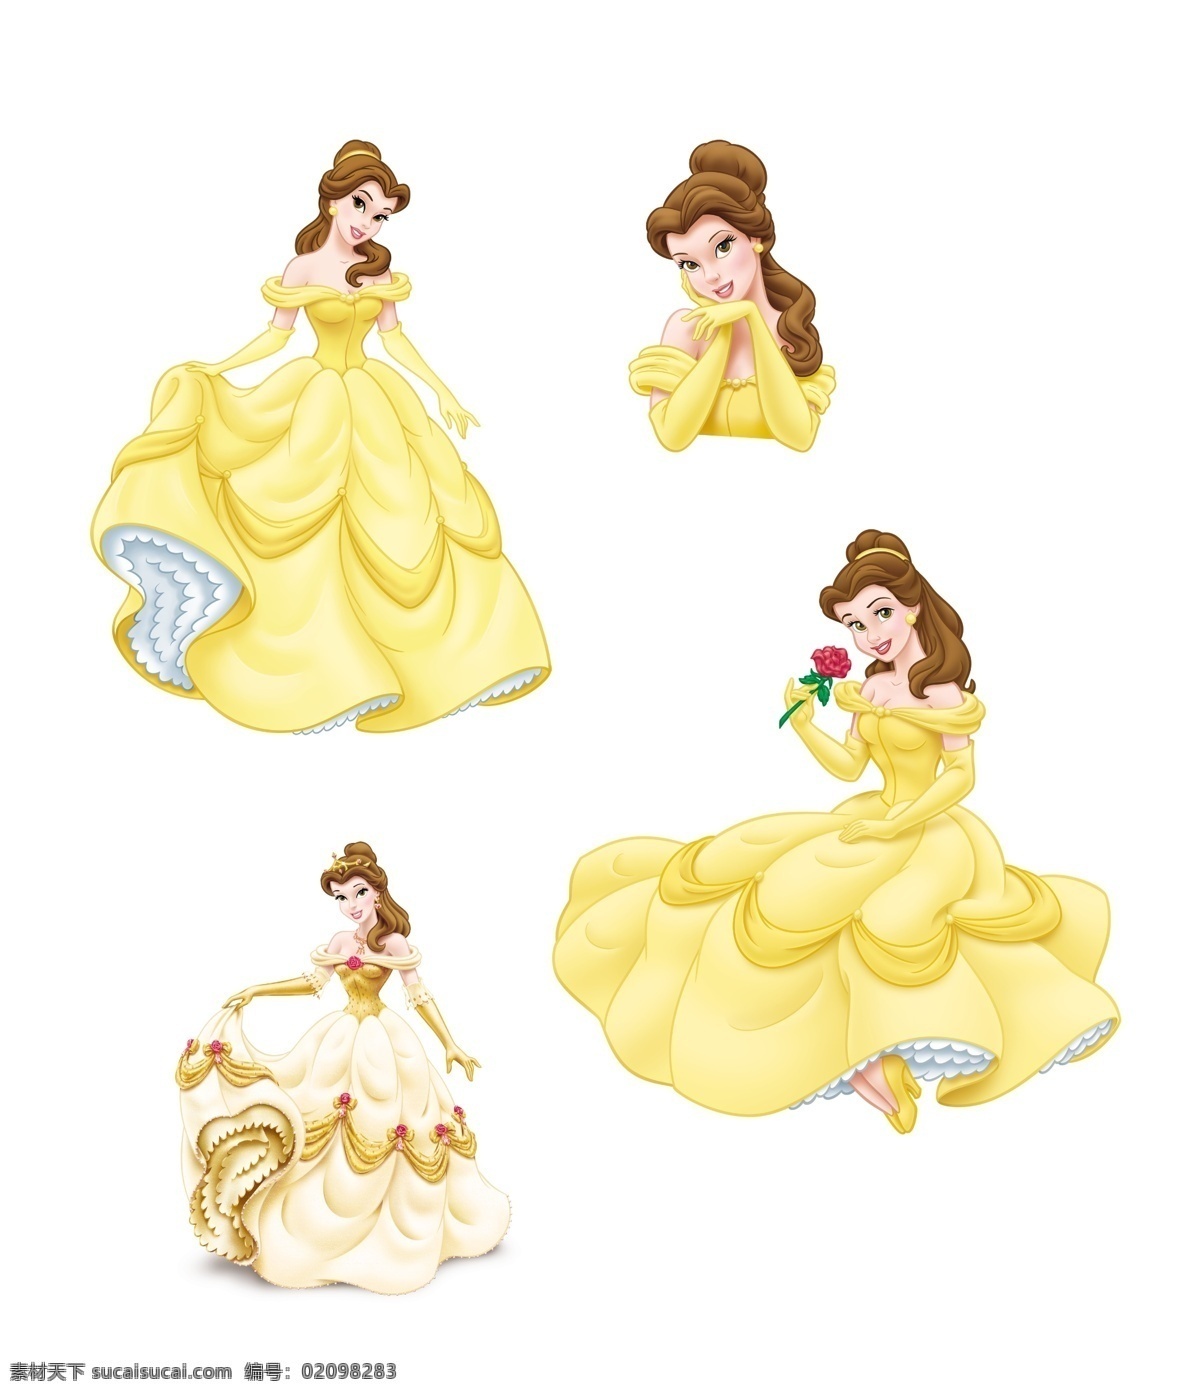 贝儿公主 贝儿 公主 迪士尼公主 迪士尼 小公主 卡通 可爱 卡通公主 可爱公主 人物素材